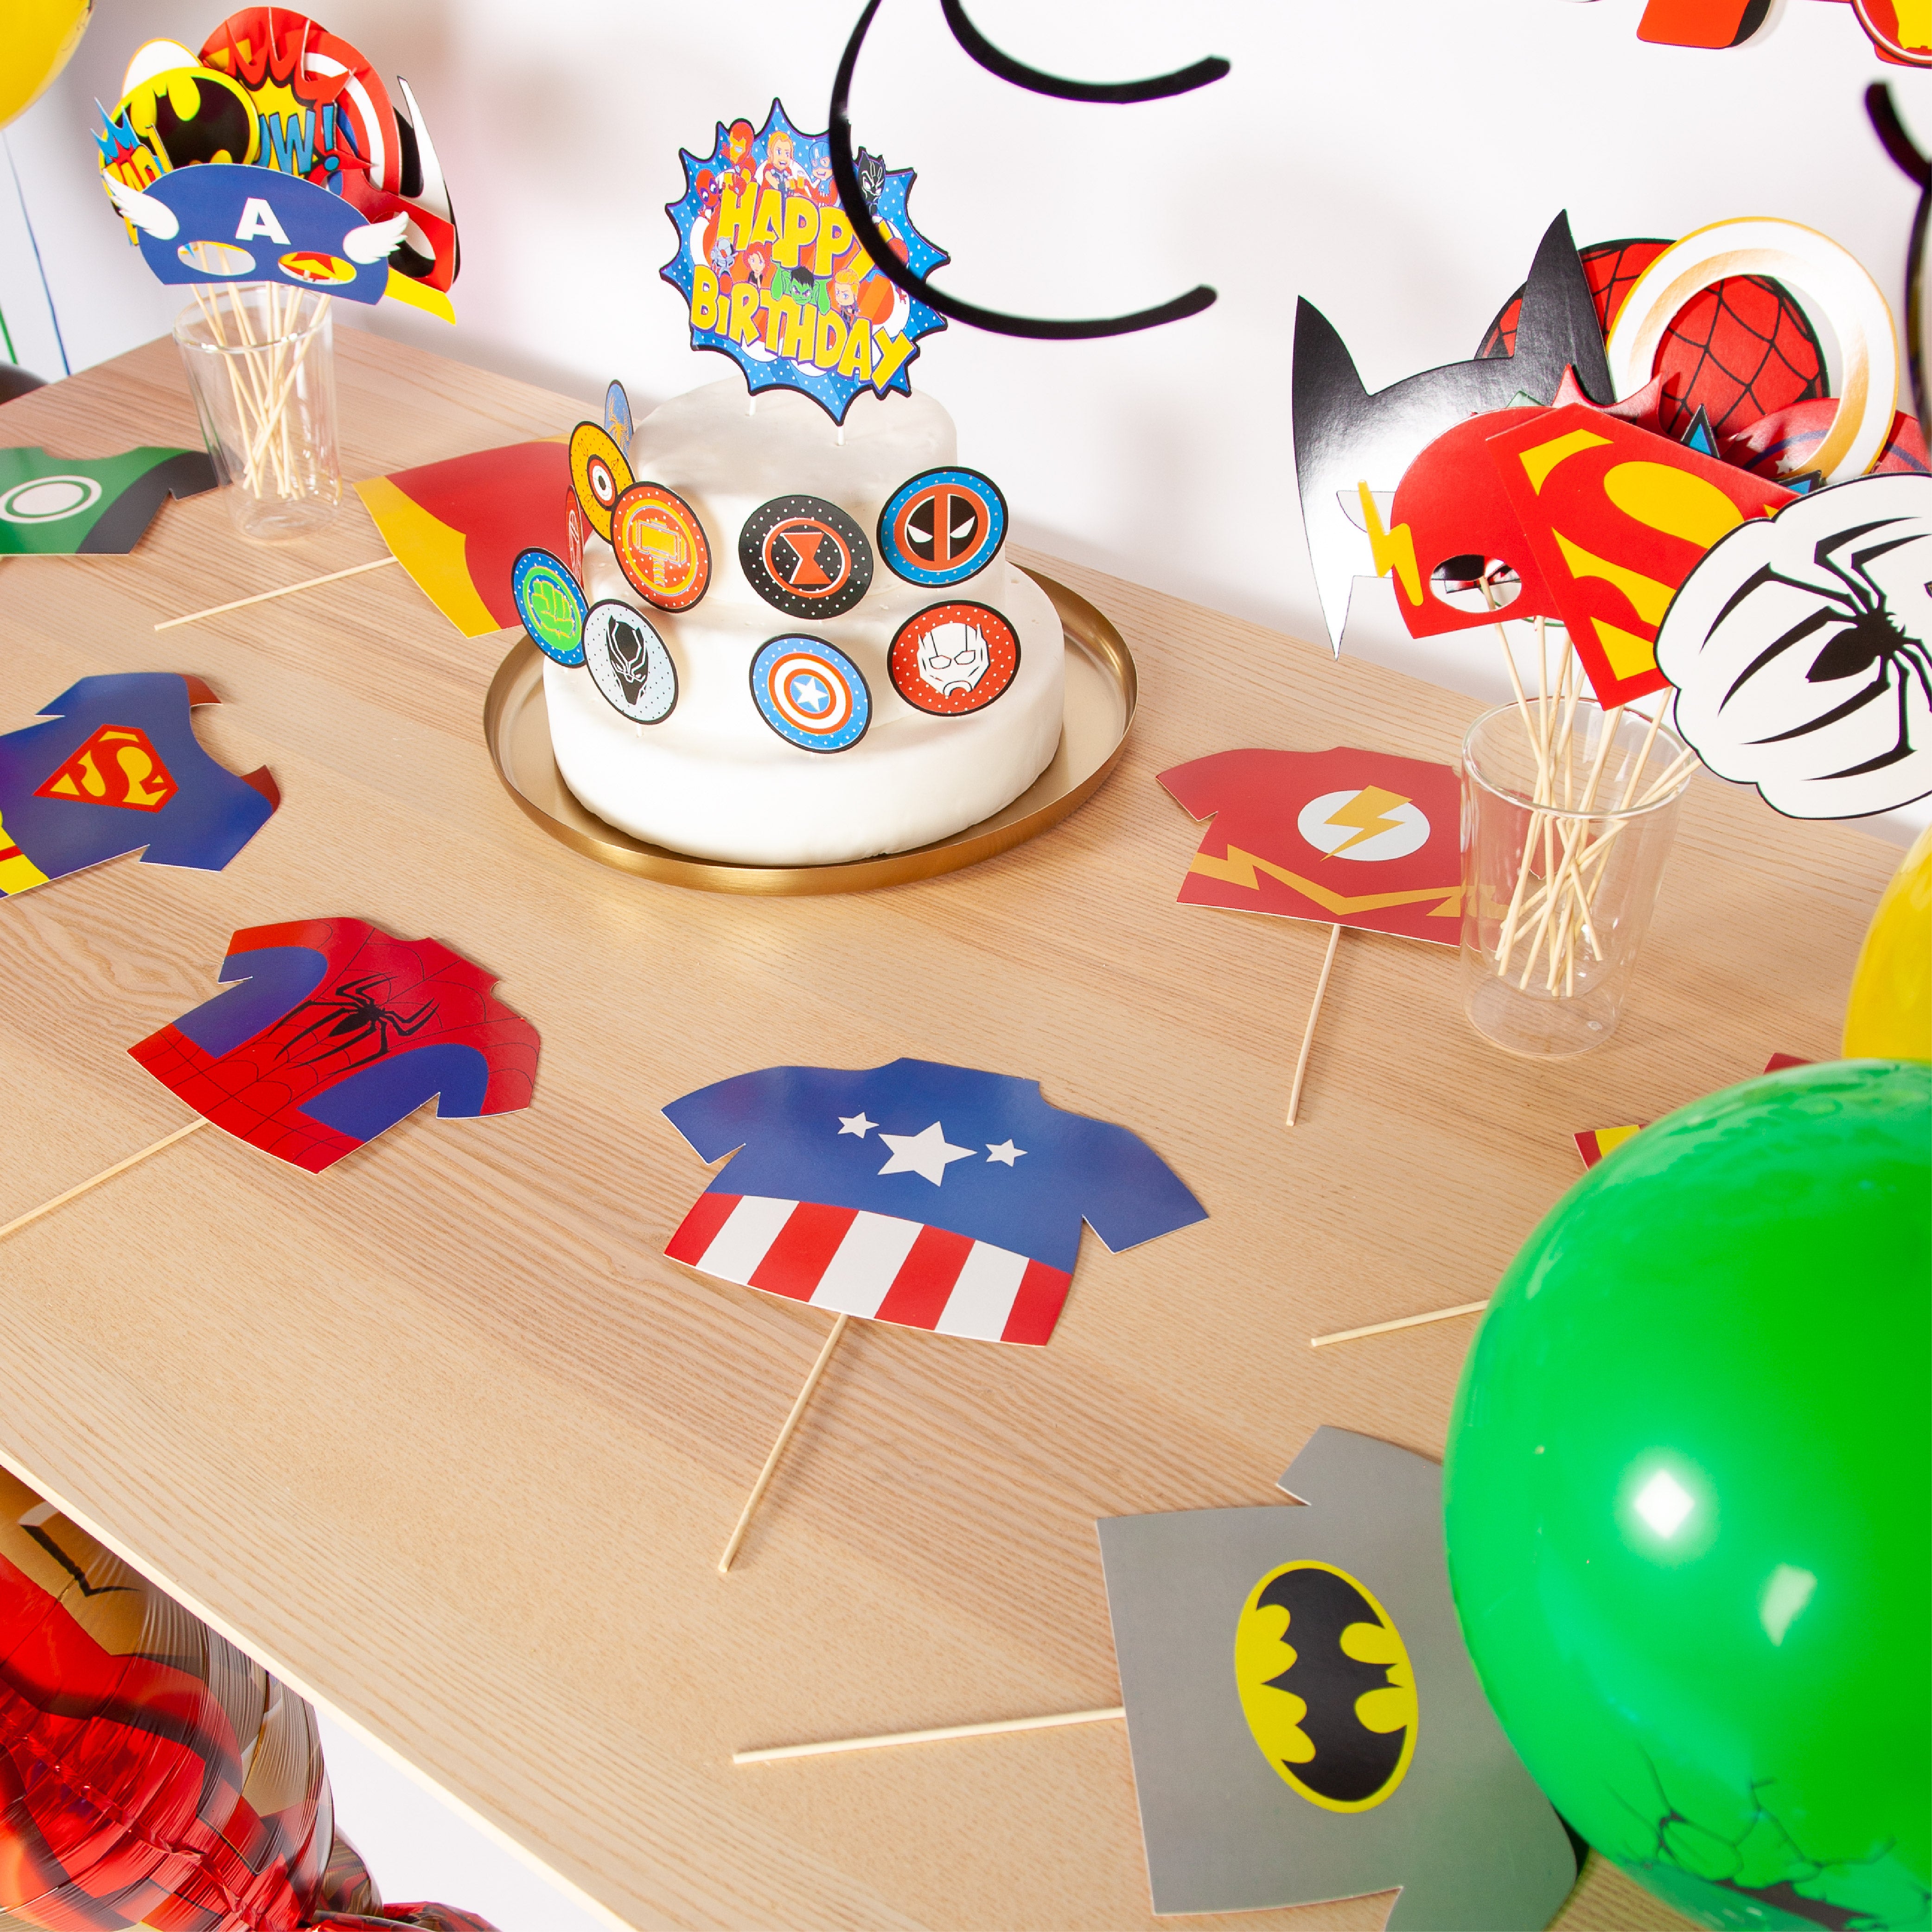 Superhelden Verjaardag Feestpakket